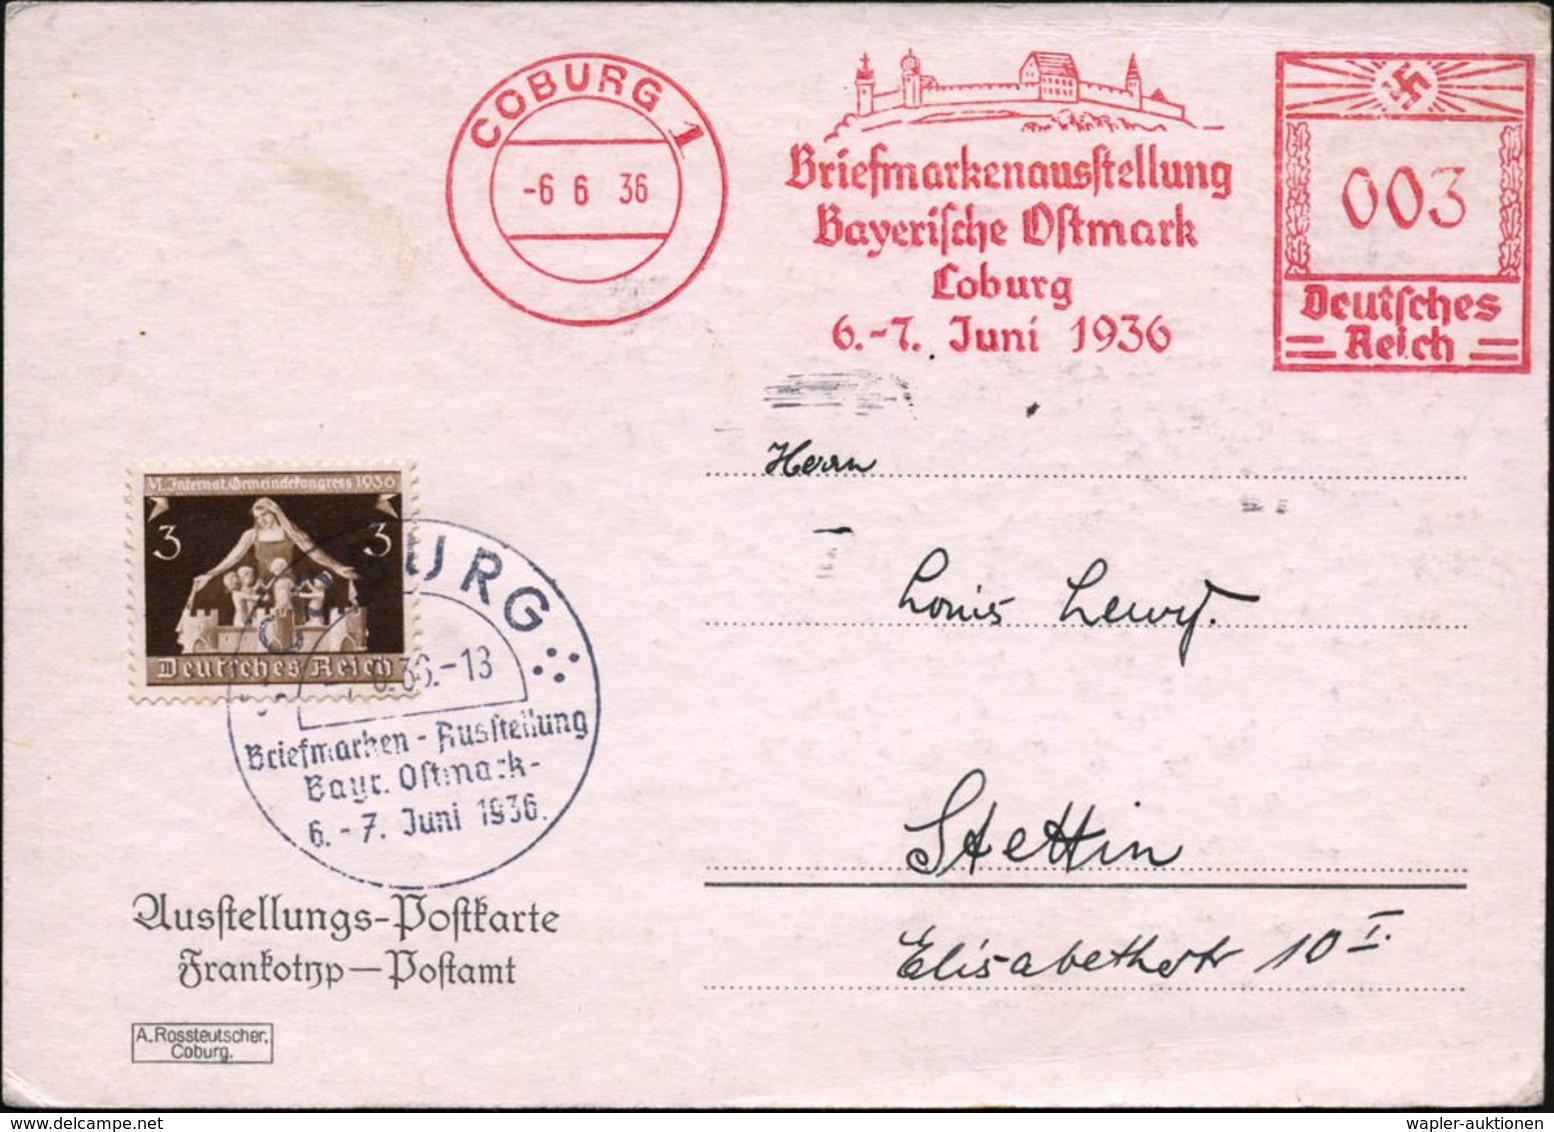 COBURG 1/ Briefmarkenausst./ Bayer.Ostmark/ ..6.-7.Juni 1936 (6.6.) AFS 003 Pf. = Veste Coburg, Lutherstätte + 3 Pf. Zus - Christendom